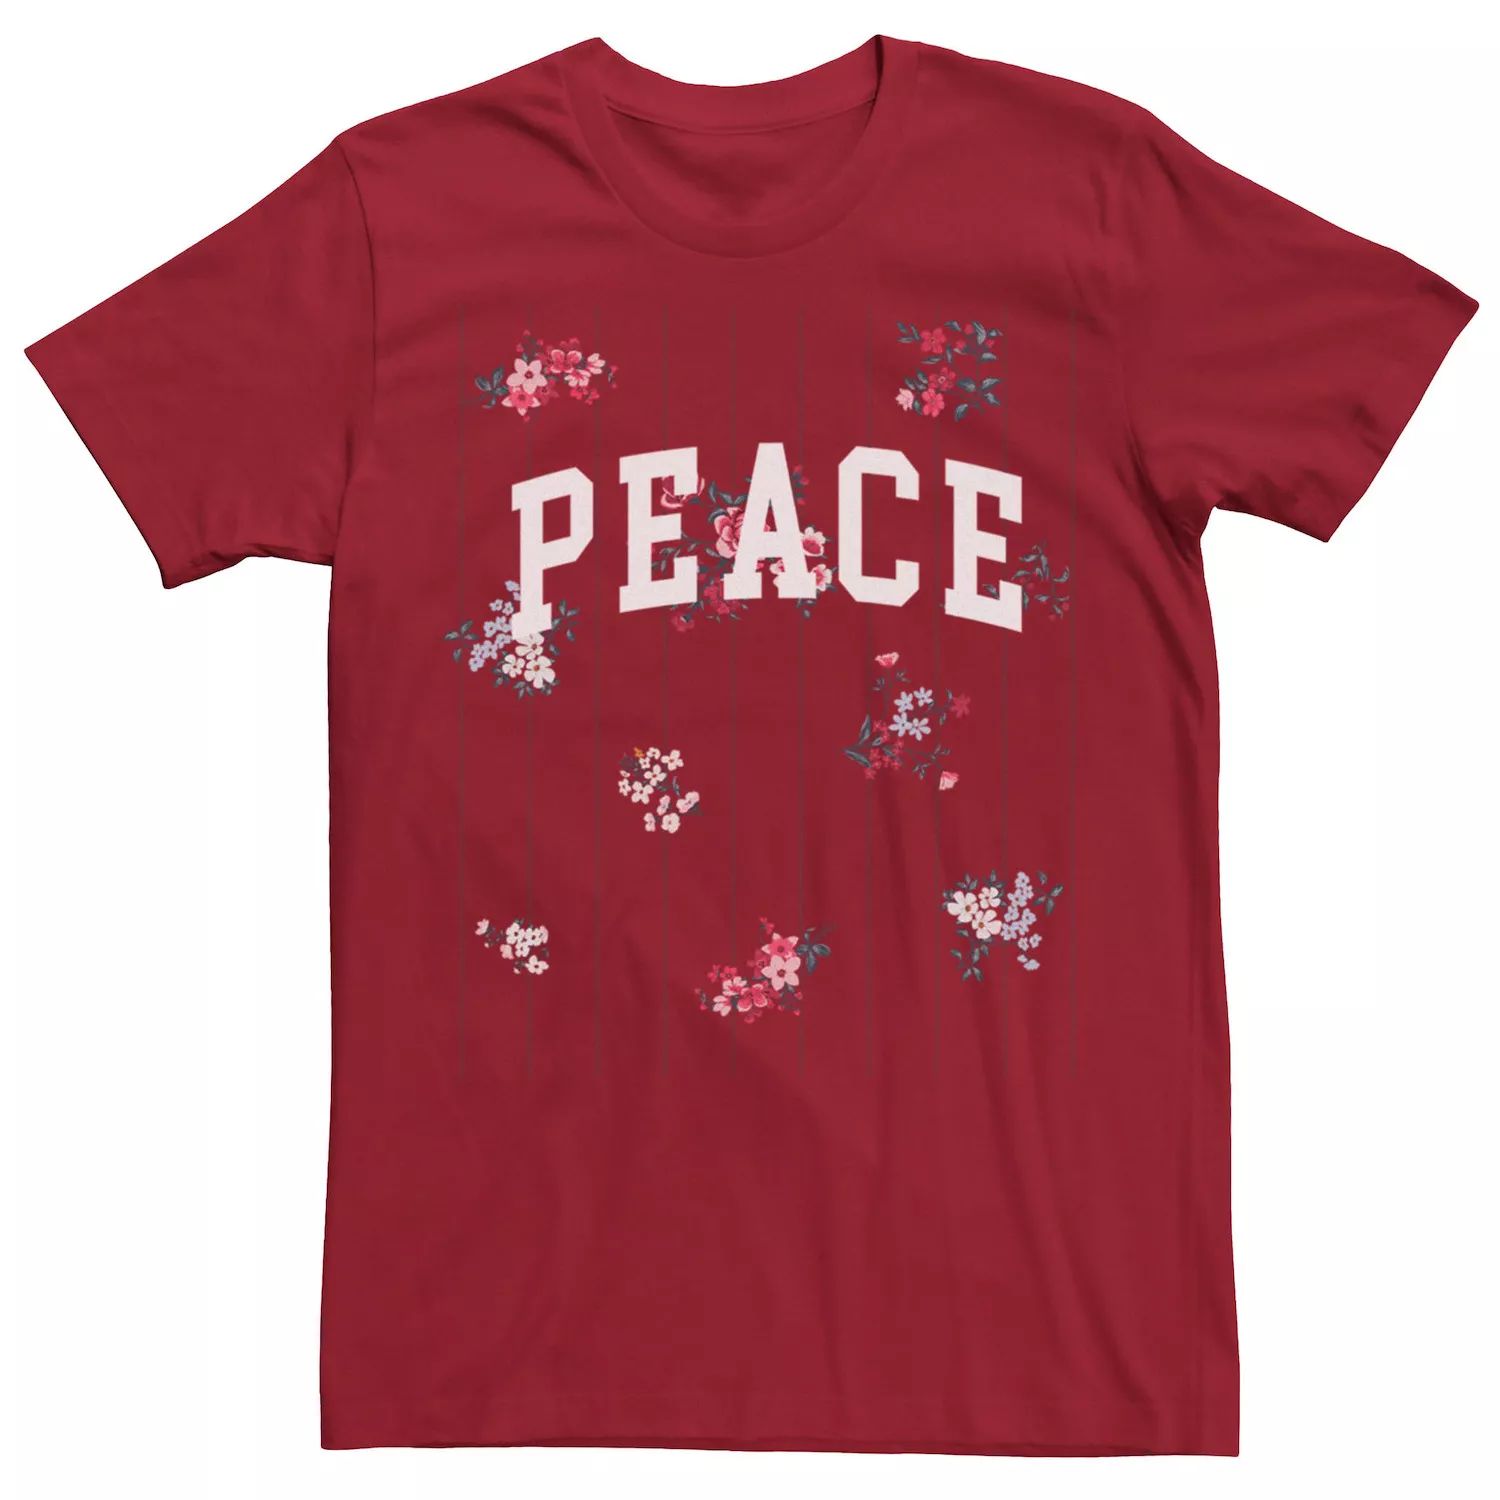 Мужская футболка Peace с маленькими цветами Licensed Character мужская футболка кот с цветами s черный